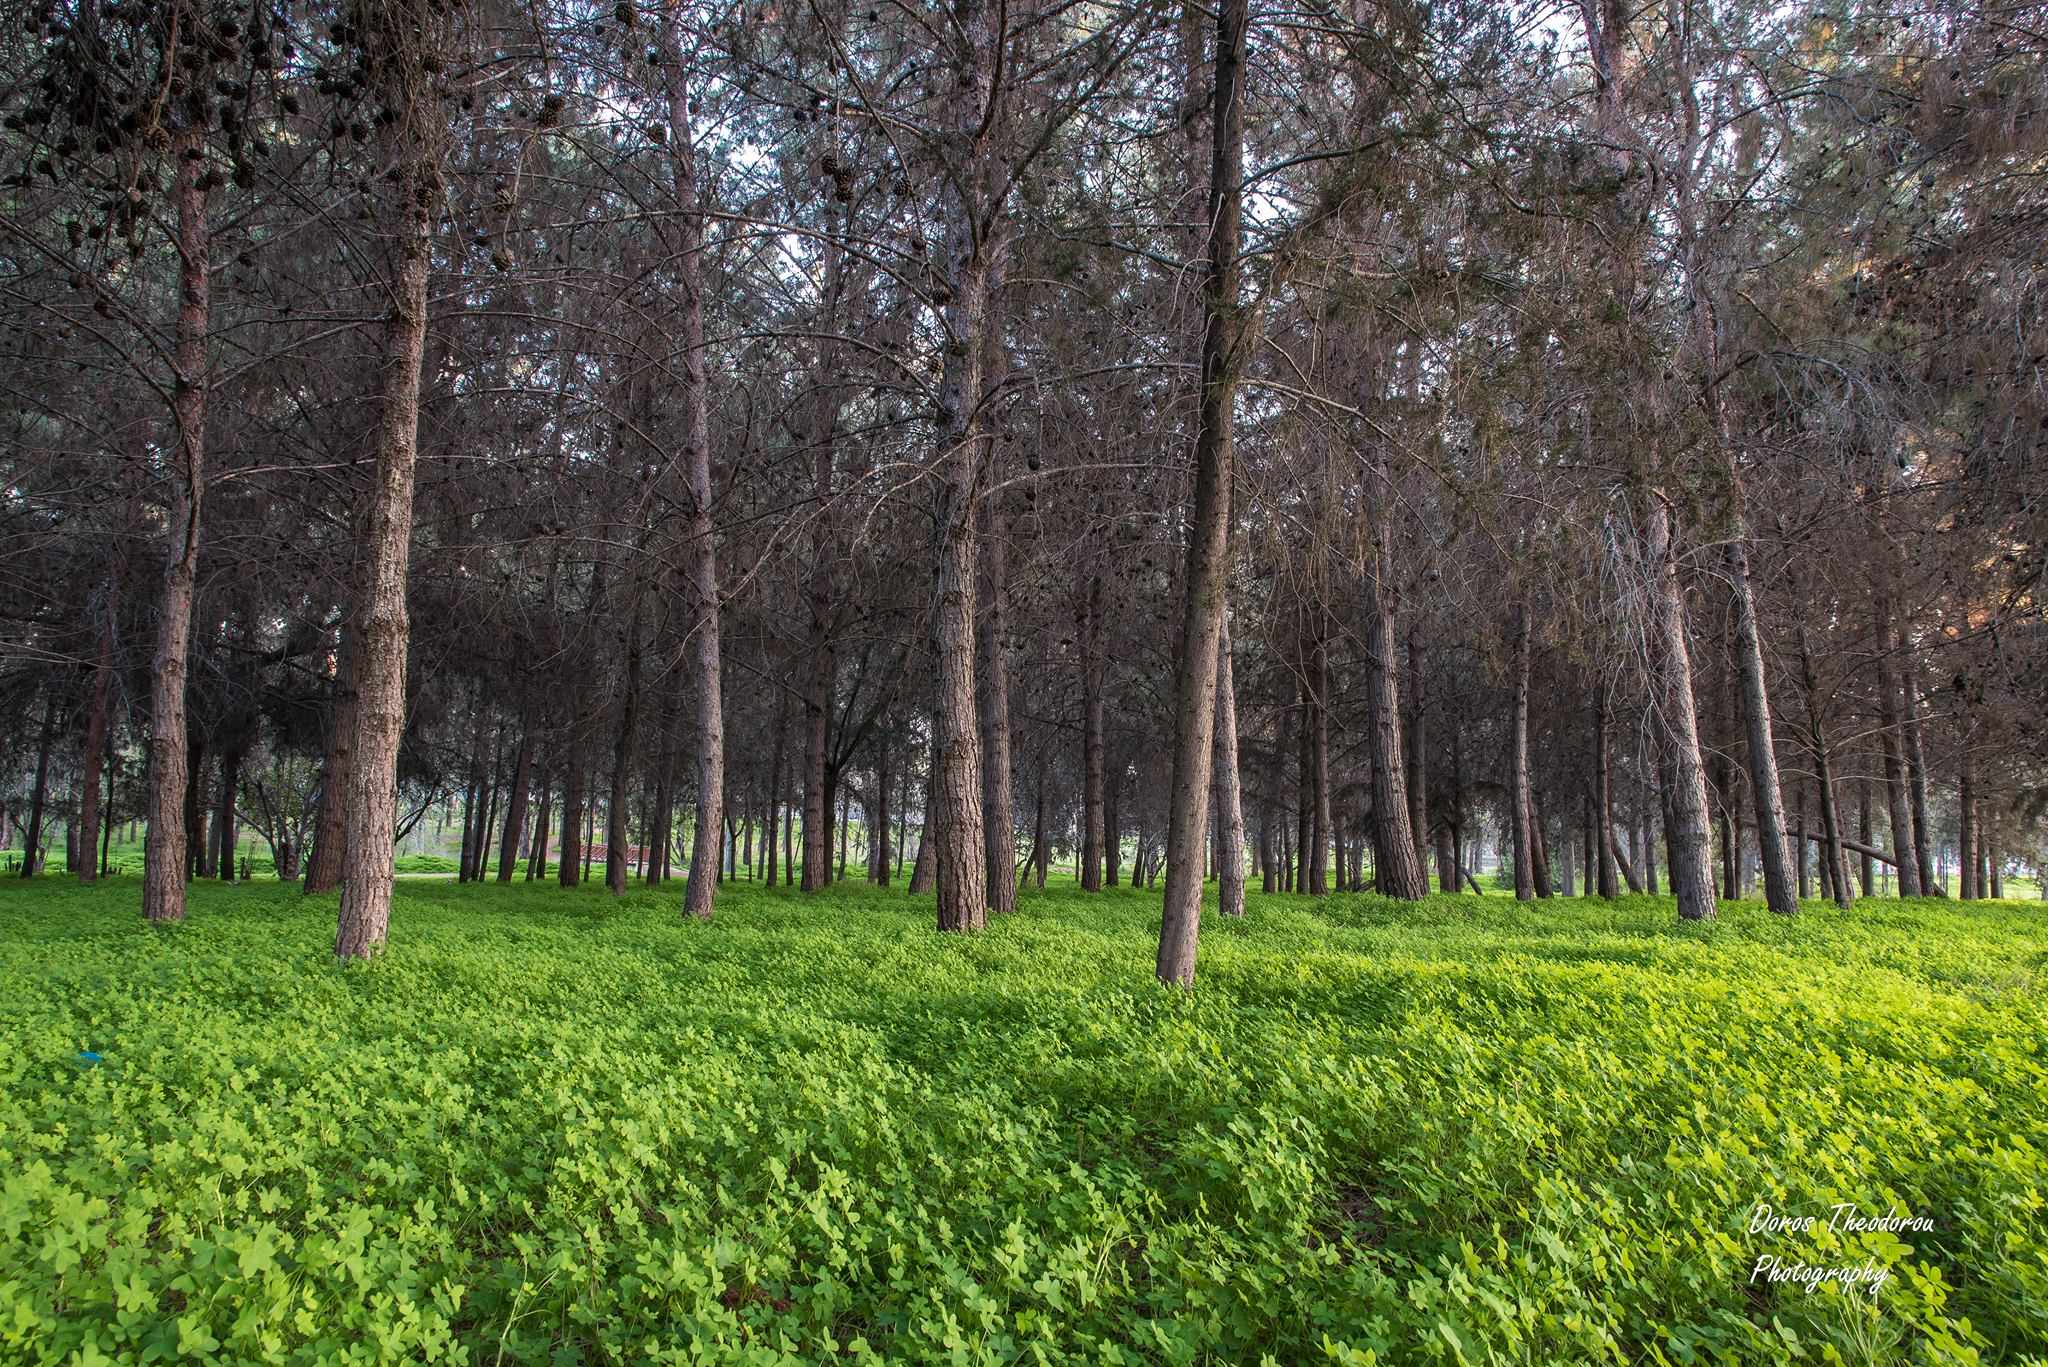 Let's Do it! Cyprus: Let's clean Akadimias Forest Park!